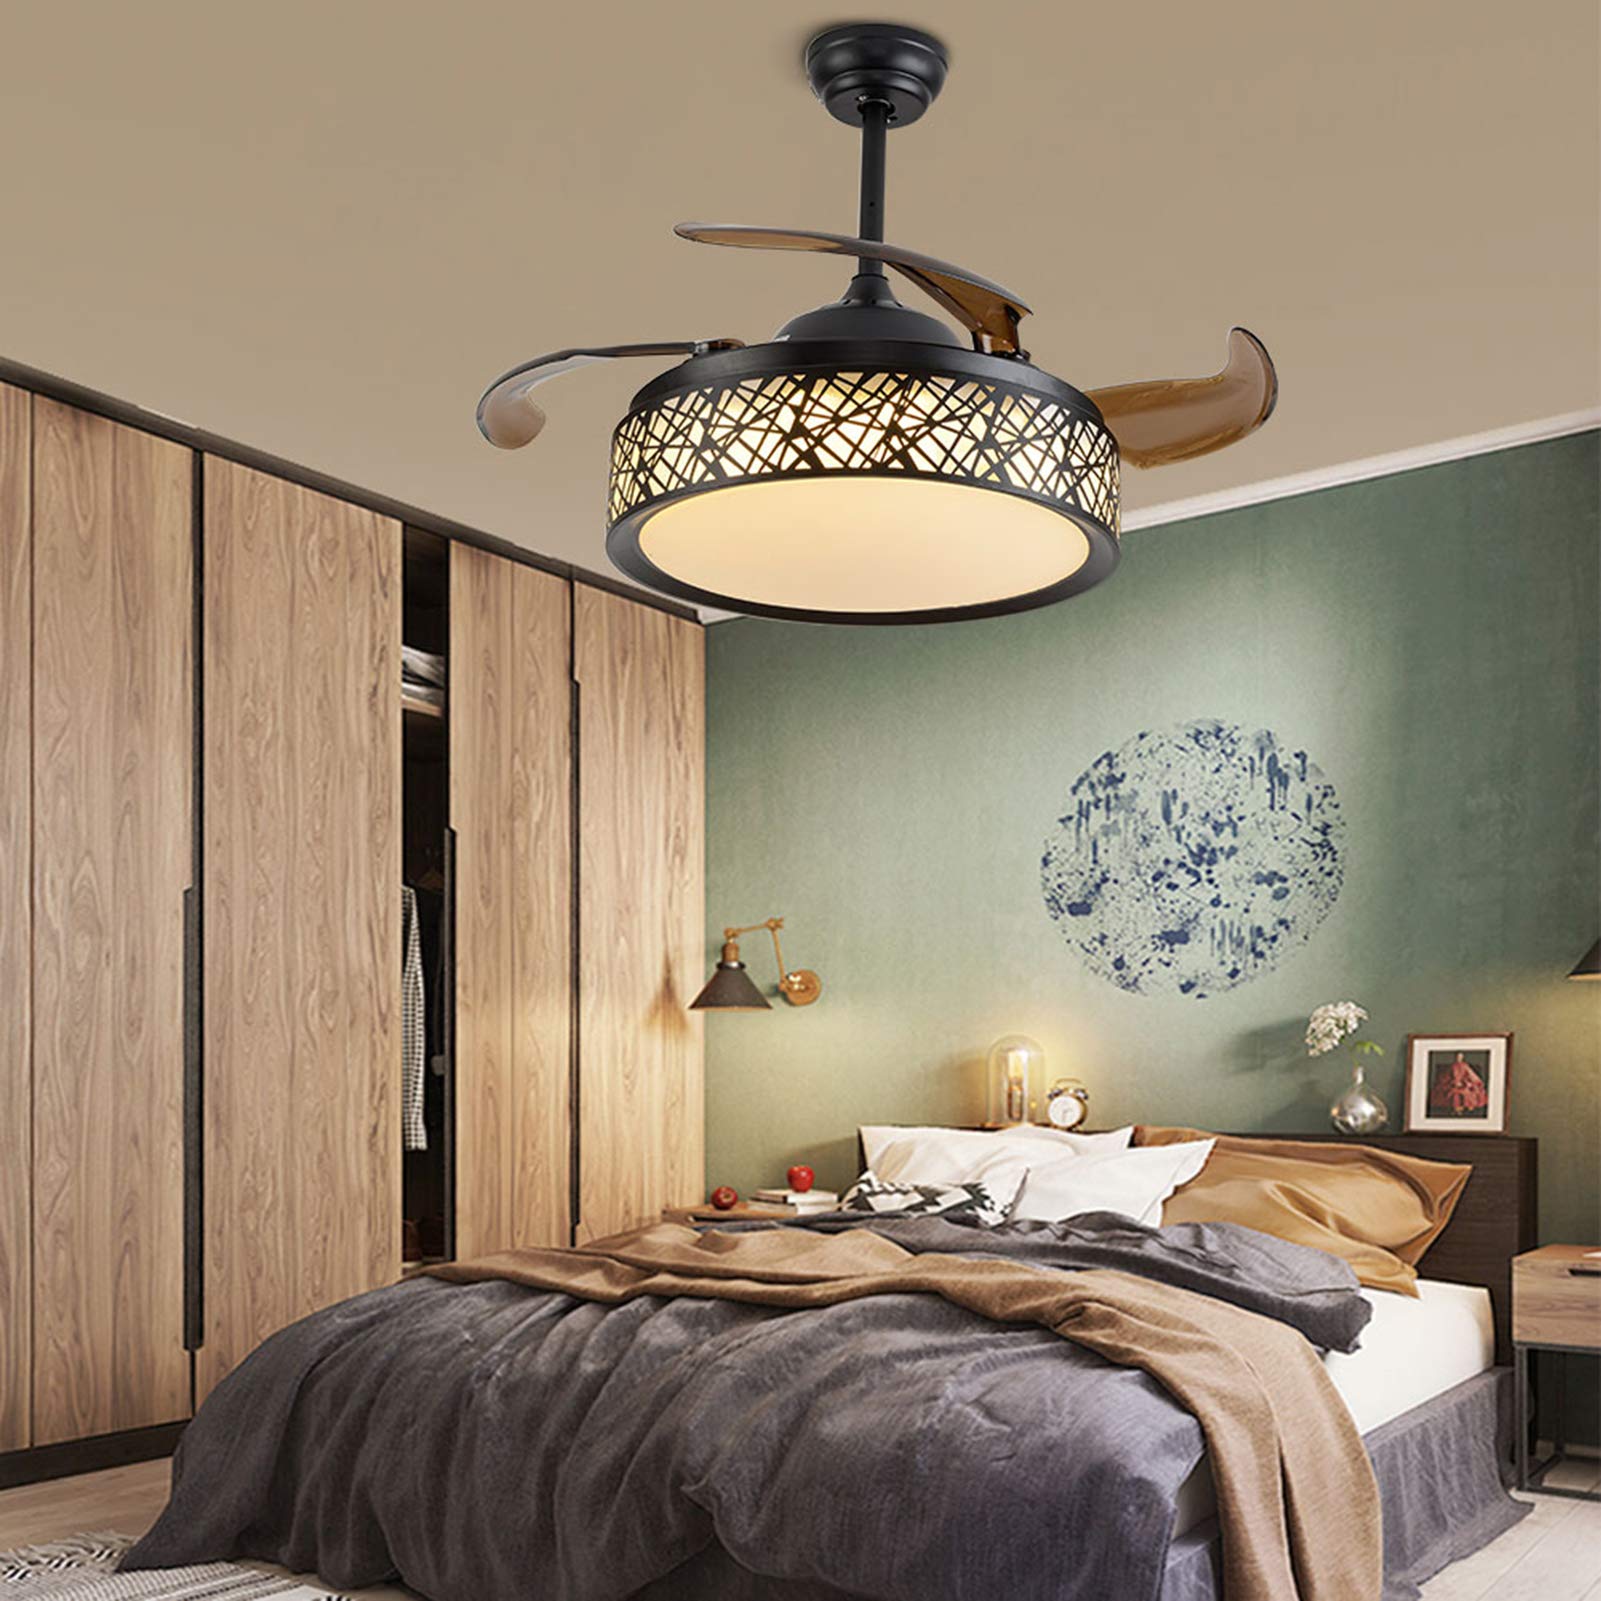 42" lampadario moderno del ventilatore del soffitto del LED, dimmable, 4 lame del ventilatore, con telecomando